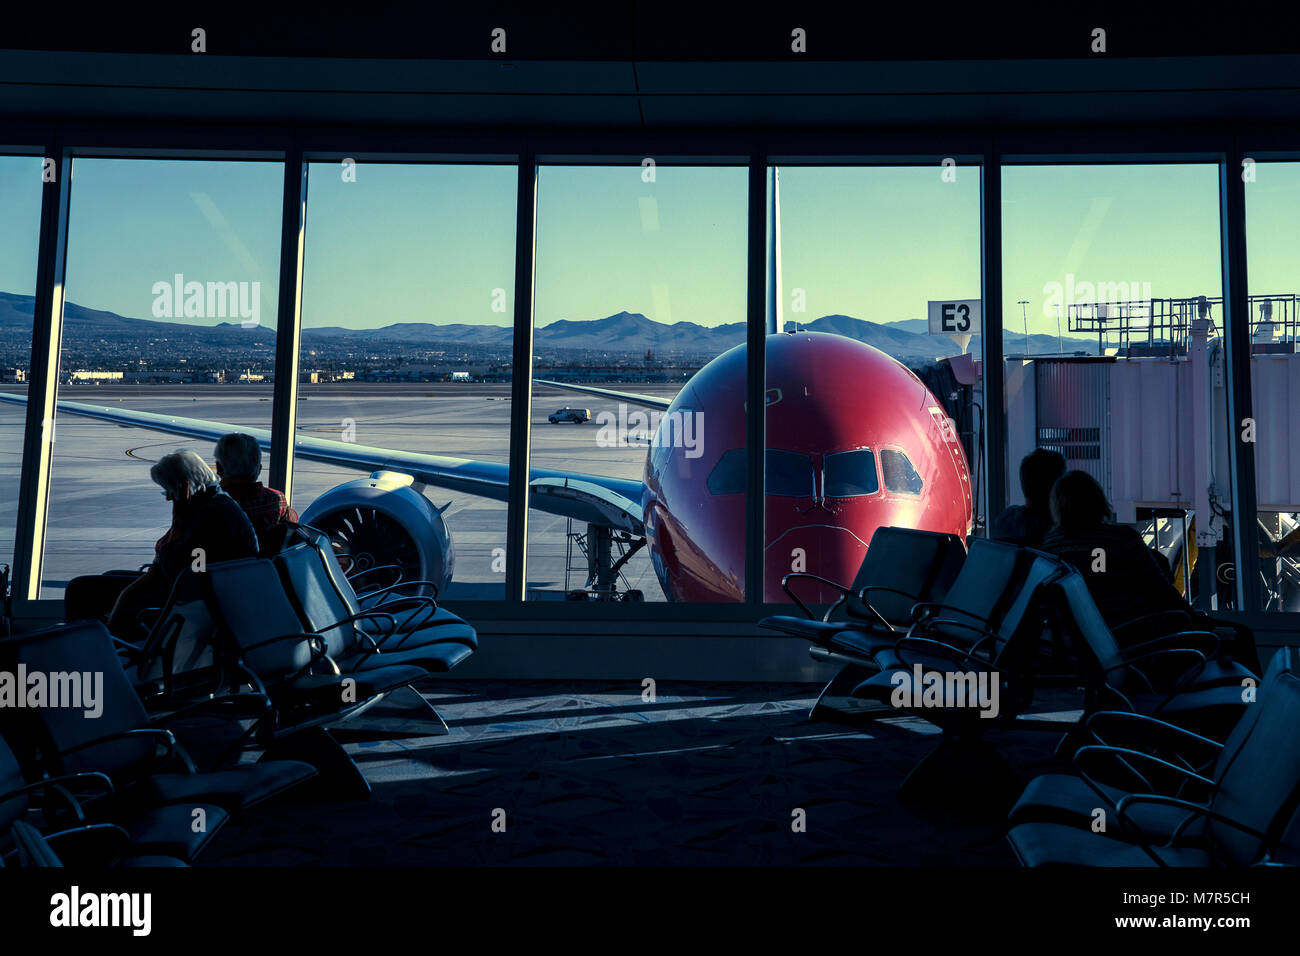 All'interno del Terminal all'Aeroporto di Las Vegas, Nevada, STATI UNITI D'AMERICA Foto Stock